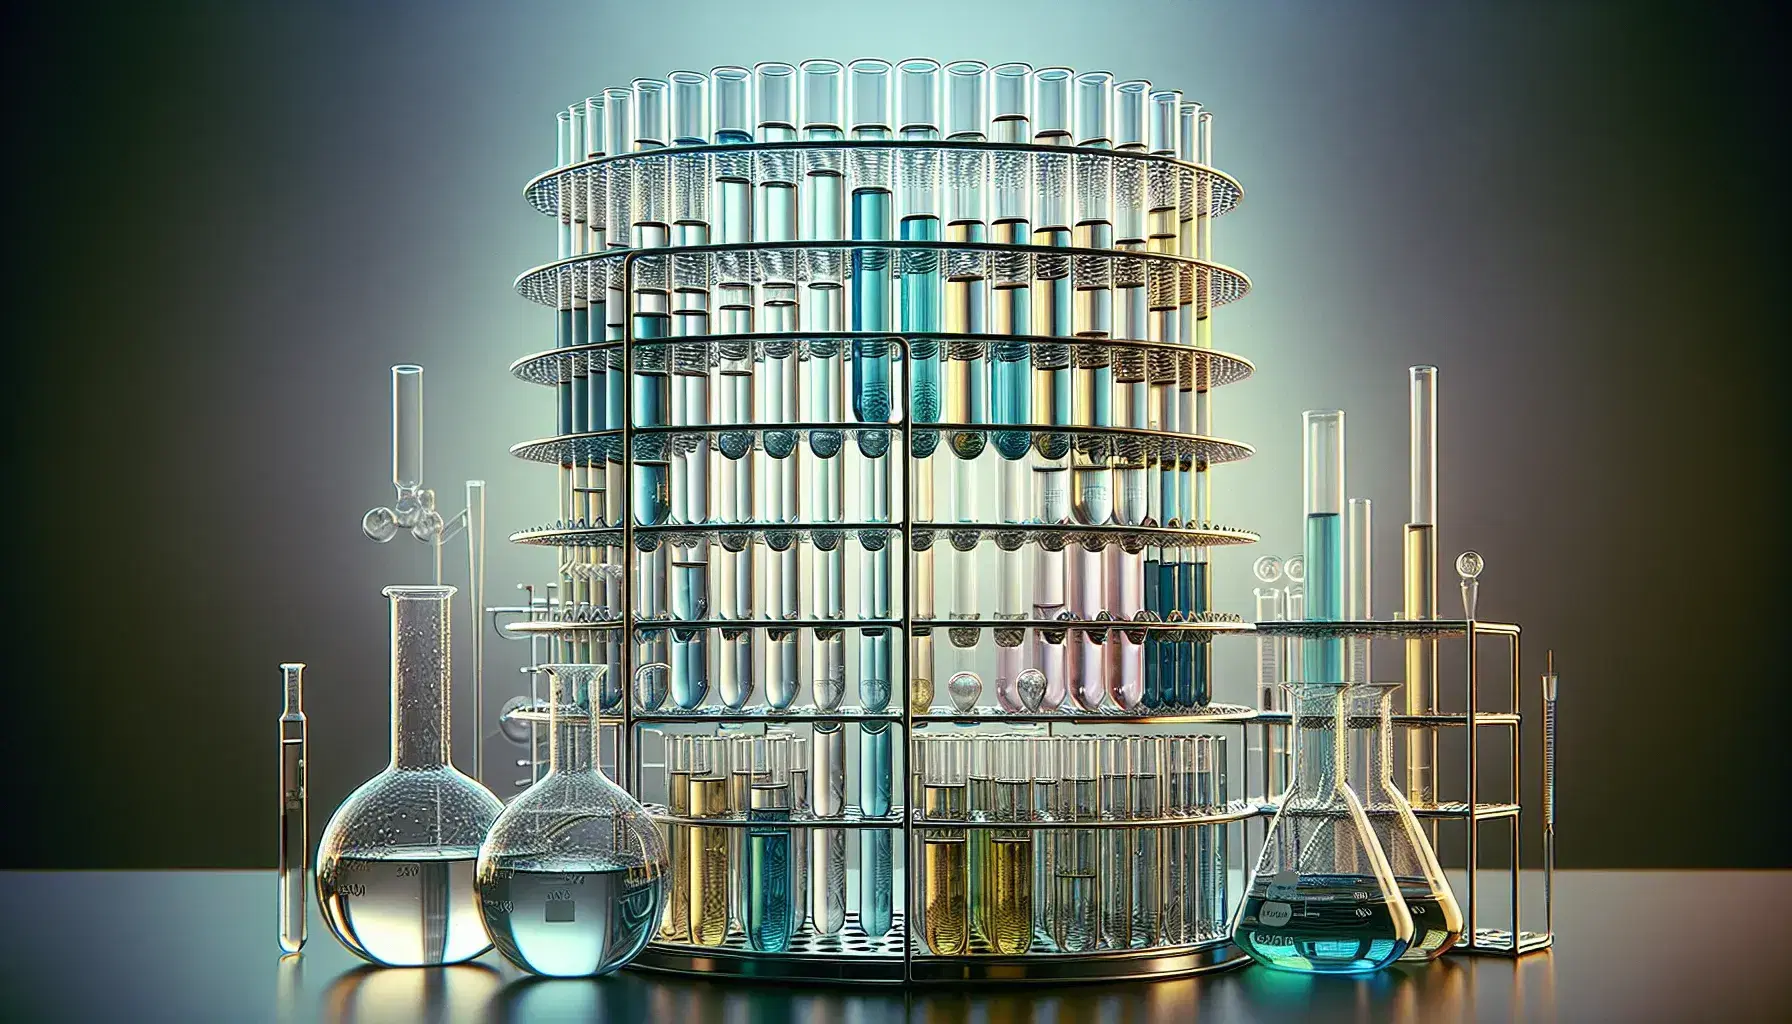 Tubos de ensayo de vidrio con líquidos de colores en gradilla metálica y material de laboratorio como matraz y vaso de precipitados en fondo desenfocado.